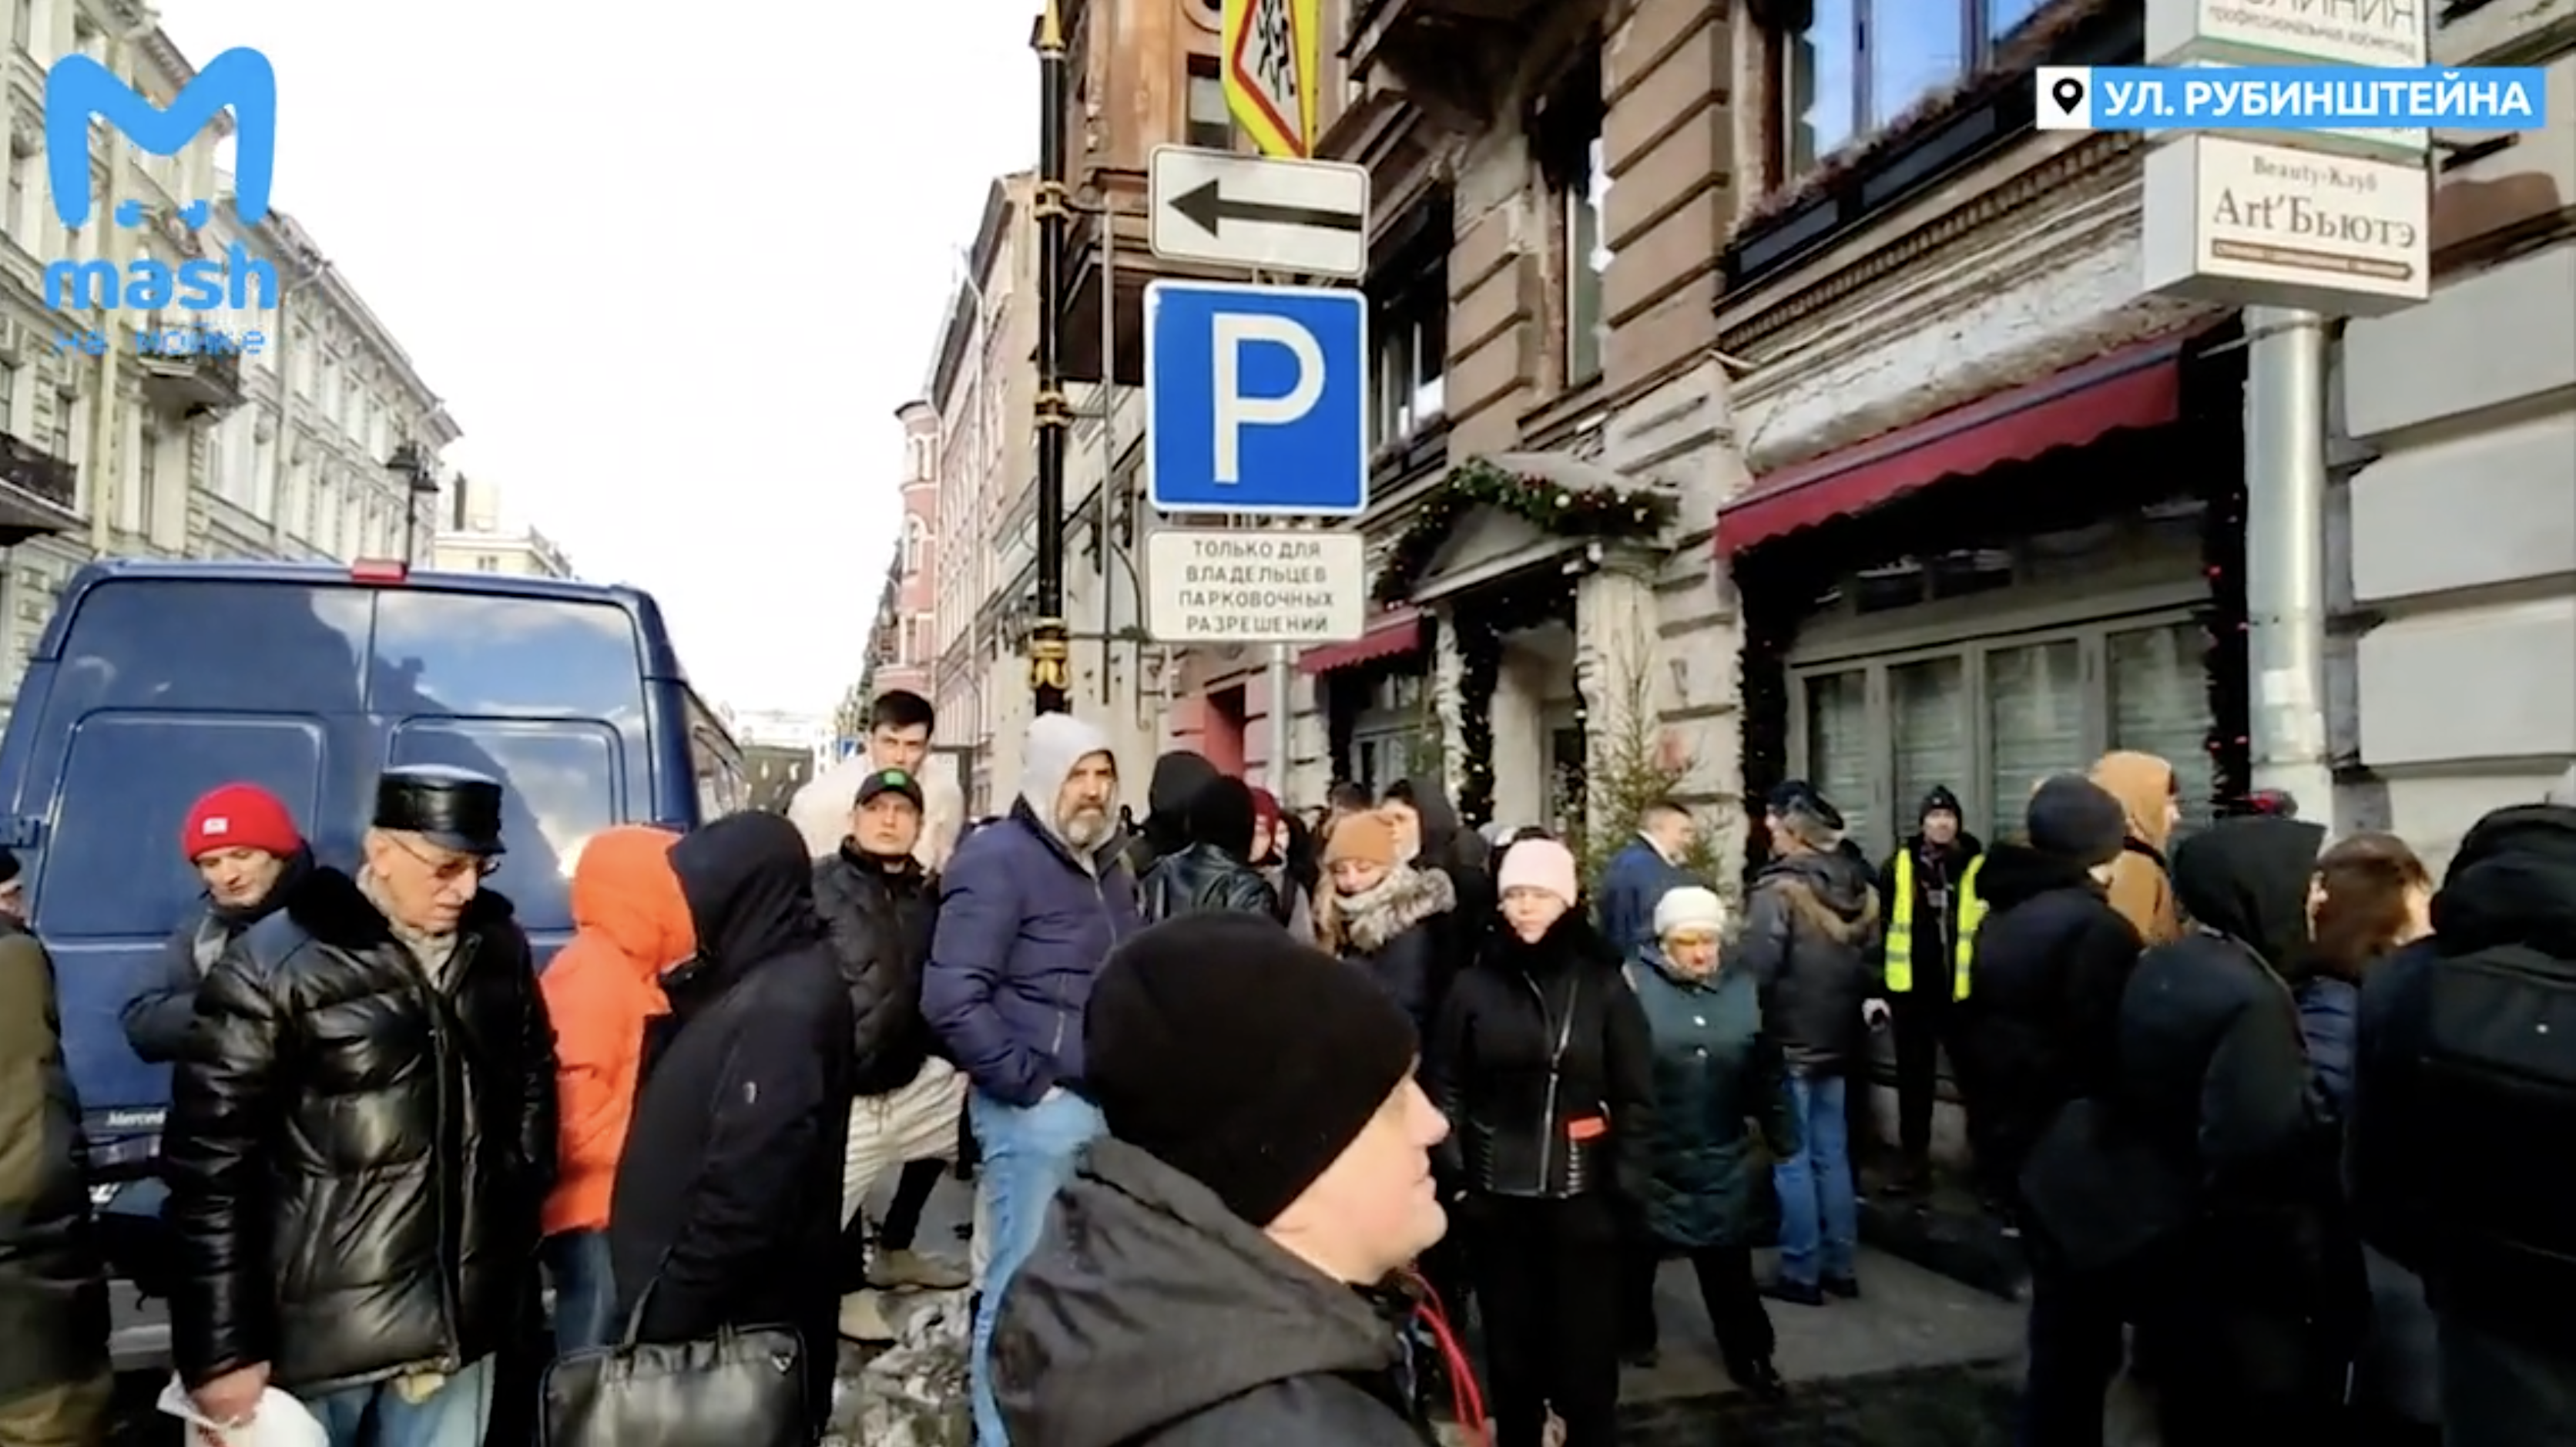 Петербуржцы собрались на улице Рубинштейна в знак протеста против ограничений Смольного